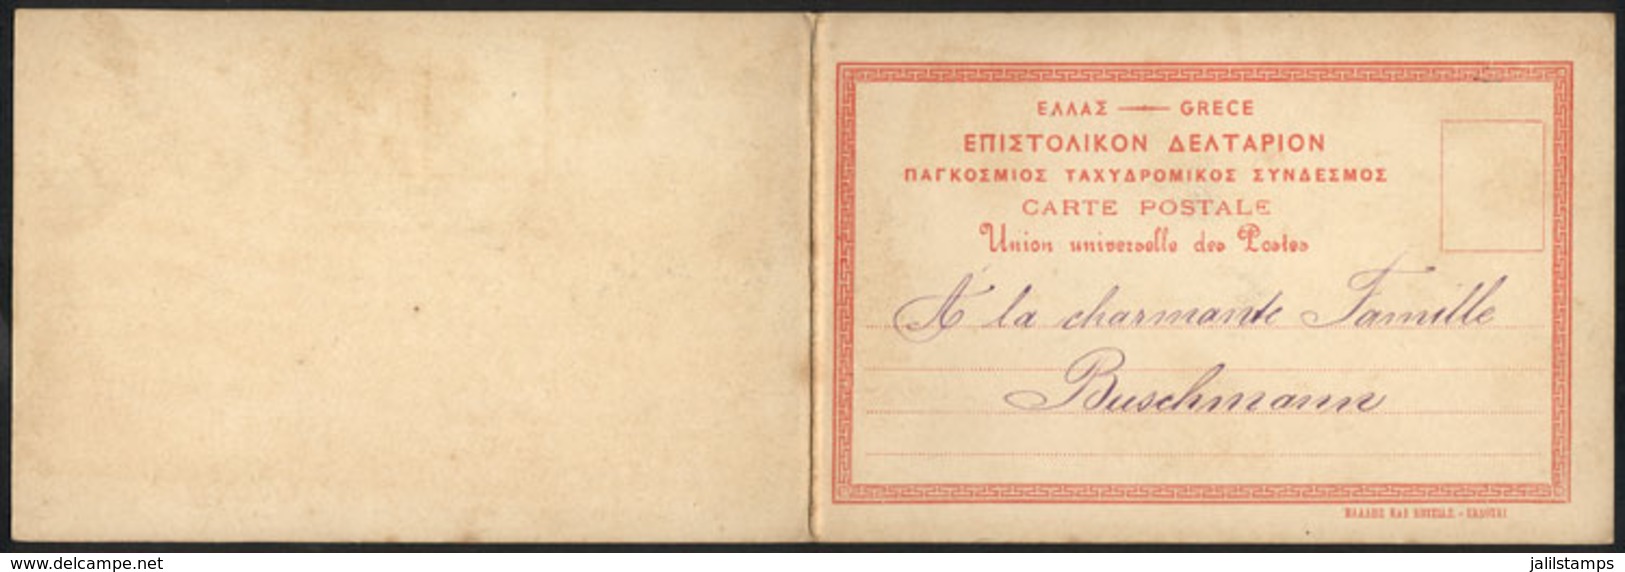 GREECE: PIRAEUS: General View, DOUBLE Postcard Circa 1900, VF Quality! - Grèce